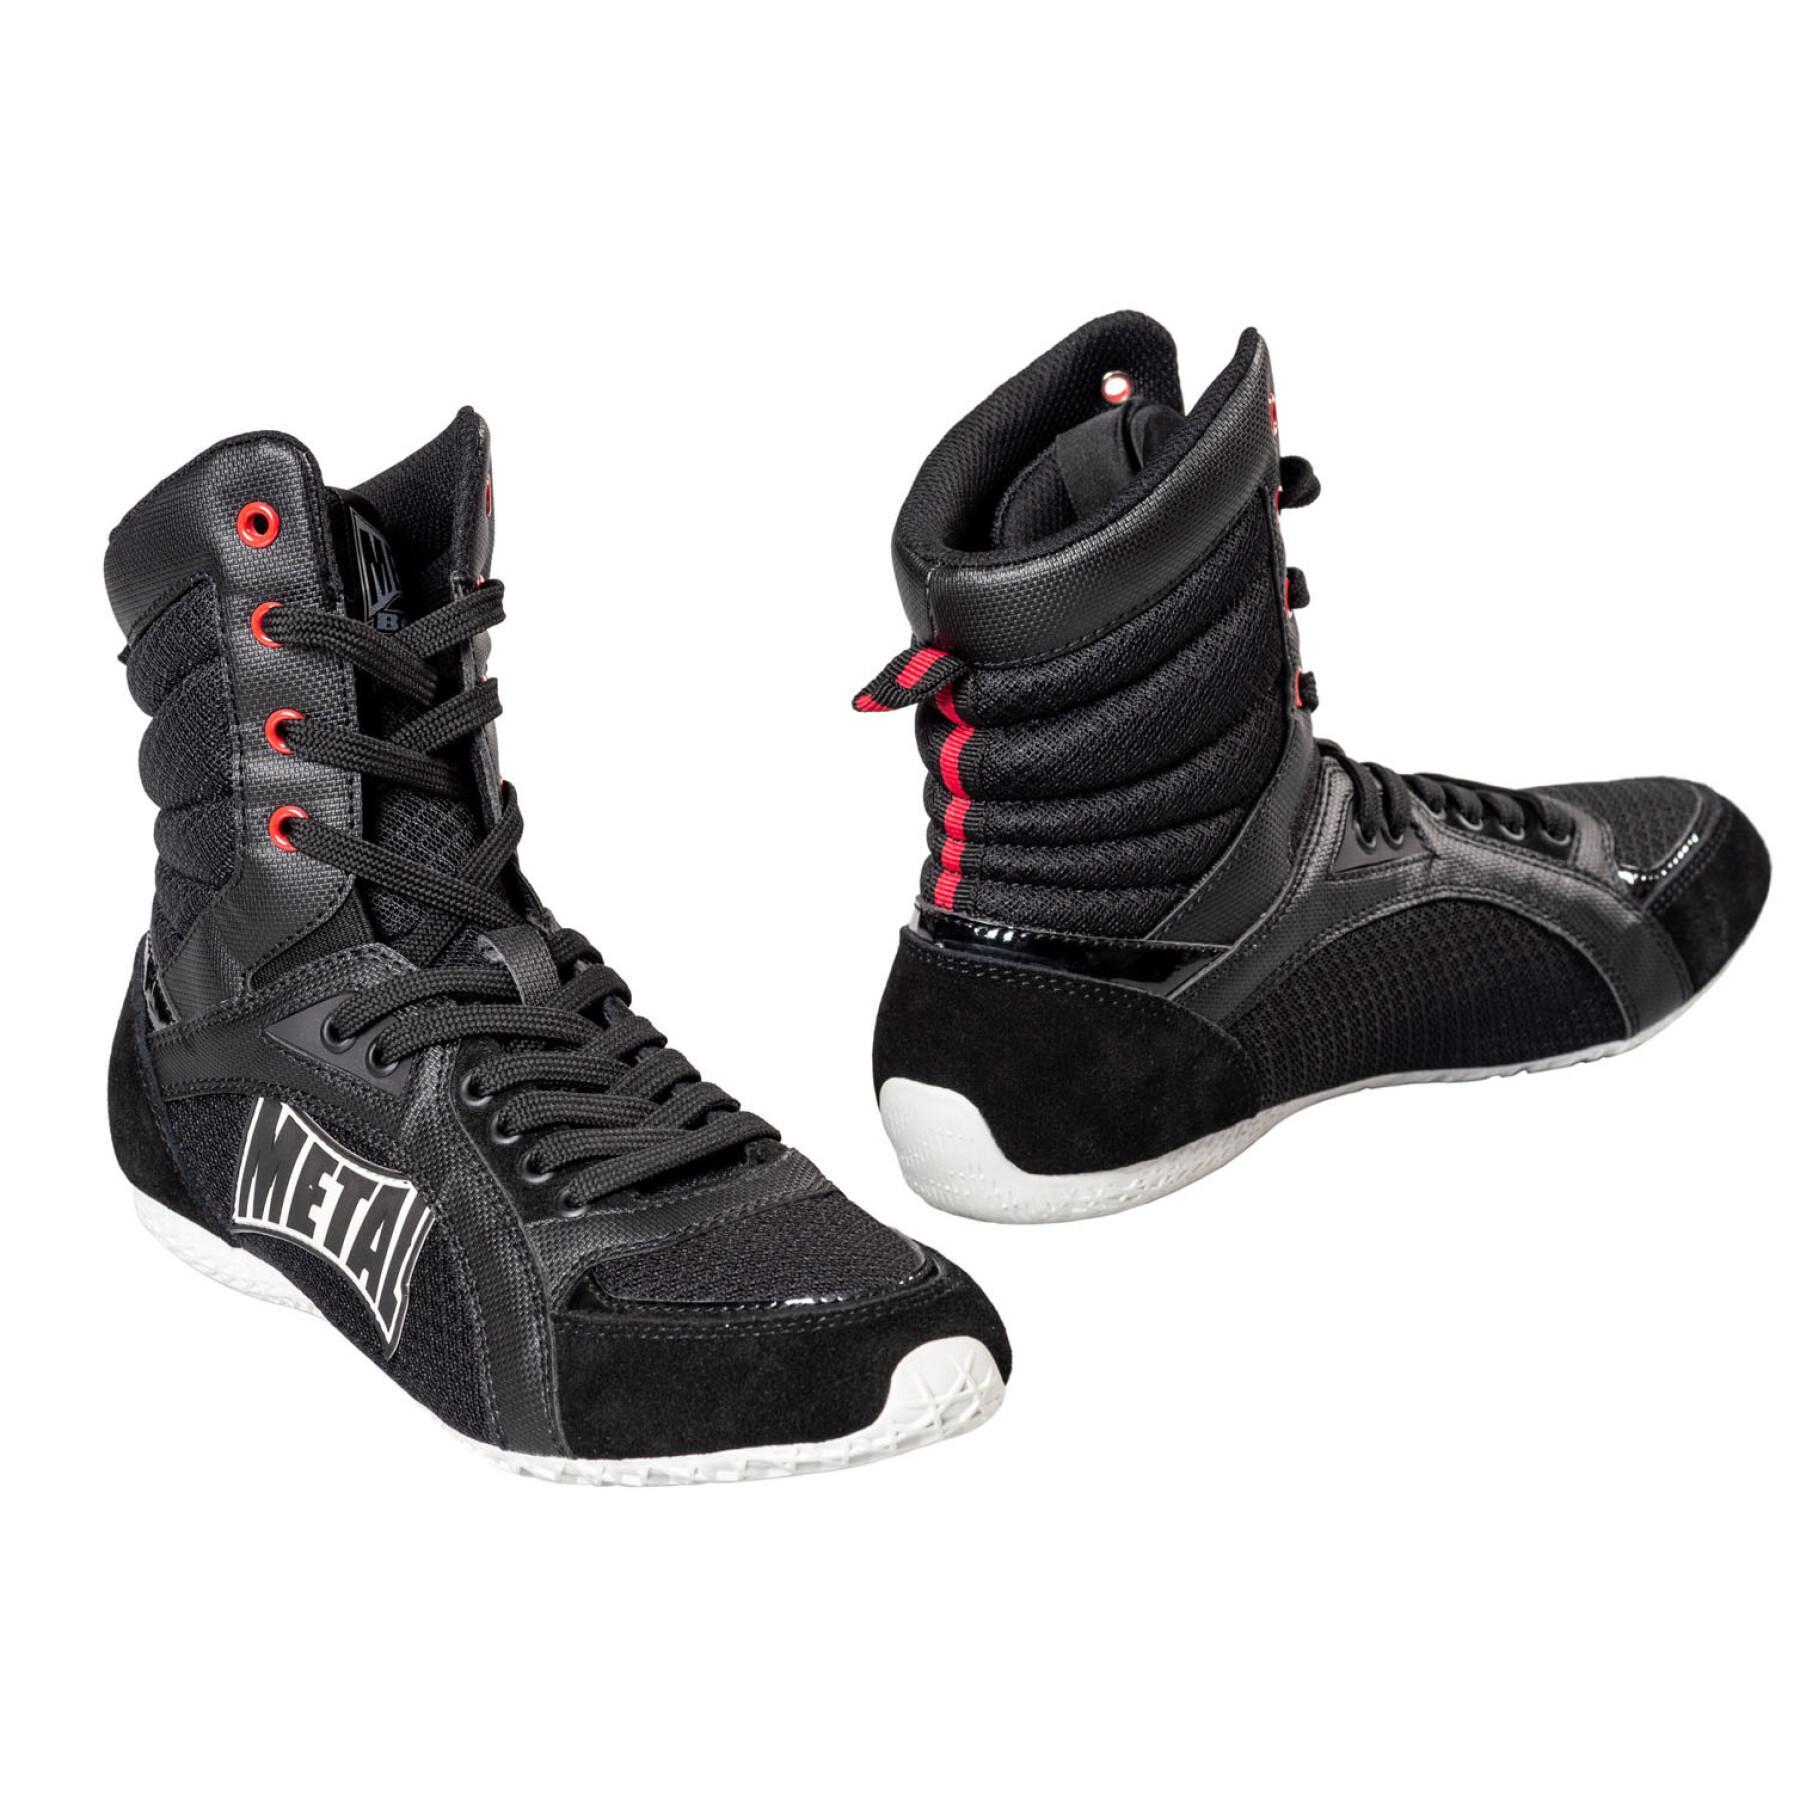 Sapatos de boxe alto Metal Boxe viper IV